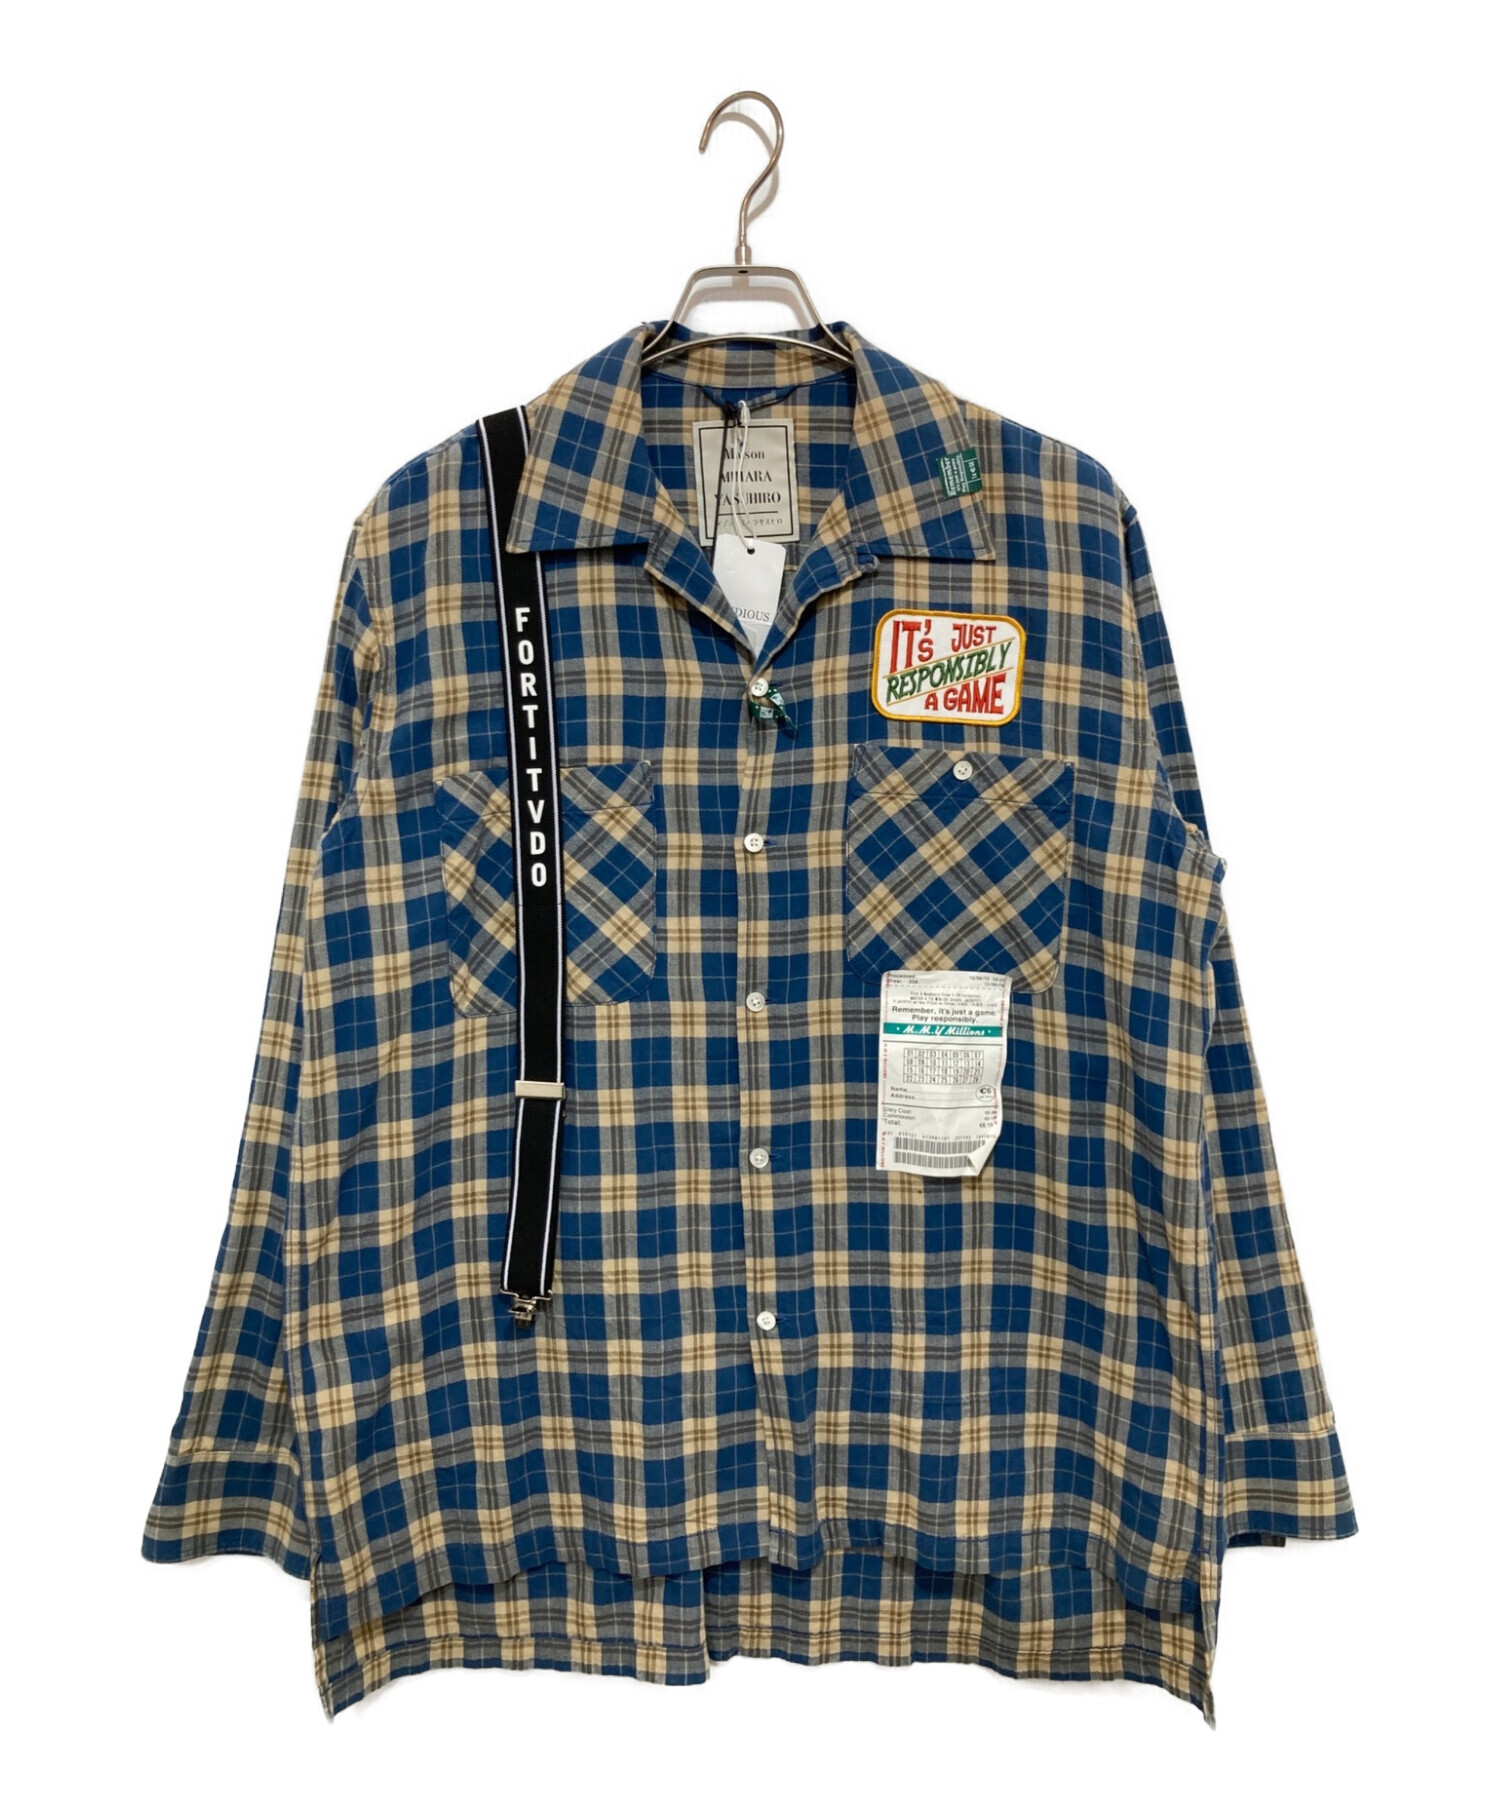 Maison MIHARA YASUHIRO (メゾン ミハラ ヤスヒロ) checked print shirt ブルー サイズ:46